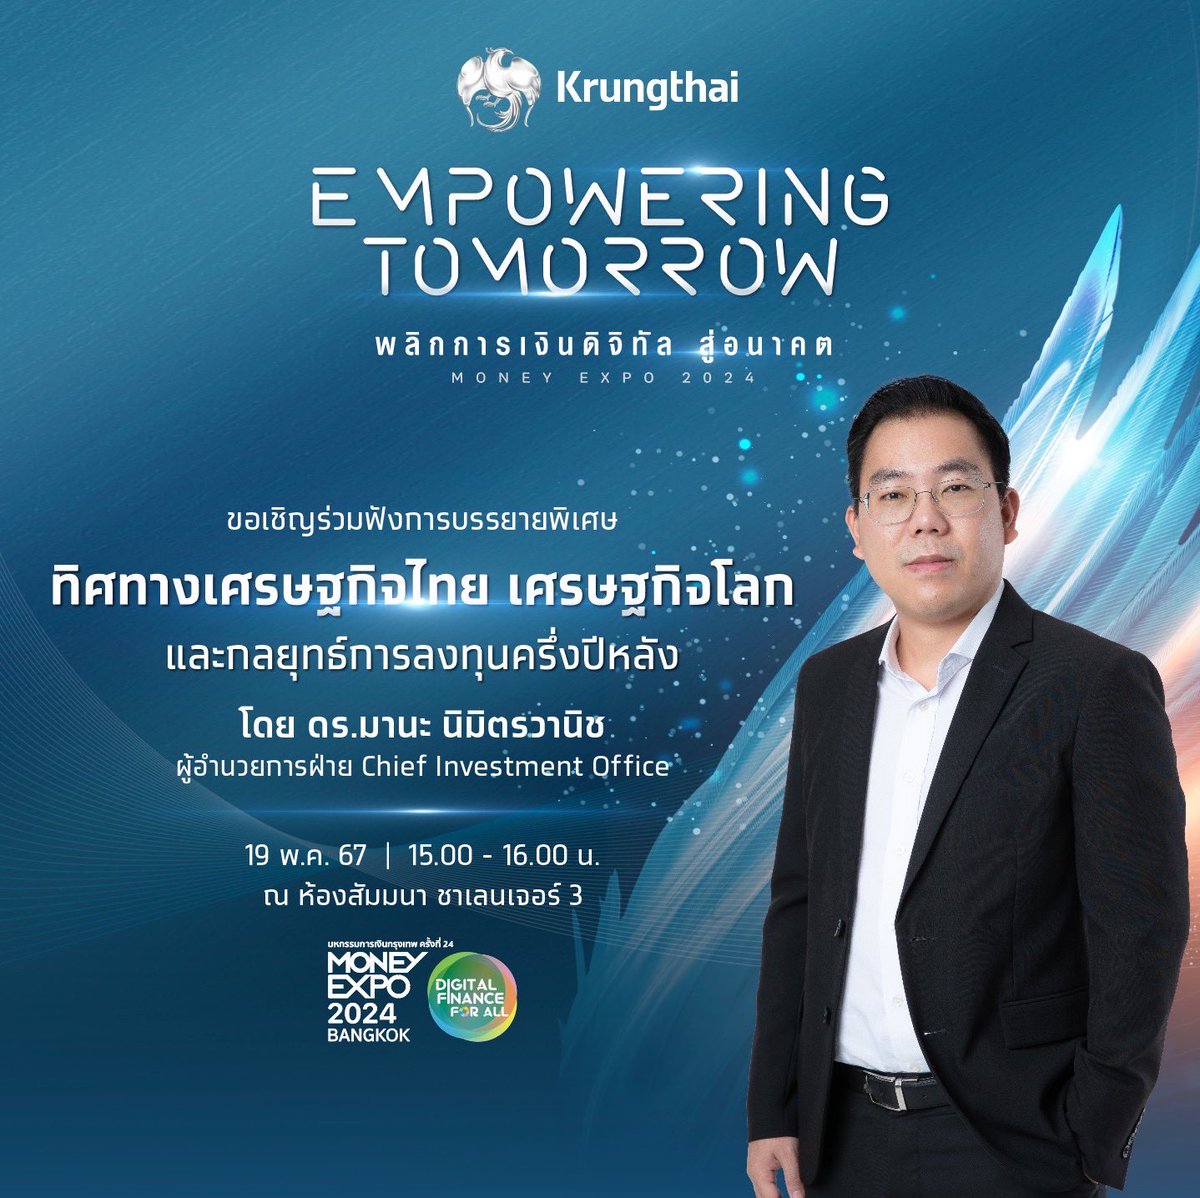 พบกับทิศทางเศรษฐกิจและกลยุทธ์การลงทุนในยุคที่เปลี่ยนแปลงไปอย่างรวดเร็ว กับ ดร.มานะ นิมิตรวานิช ผู้อำนวยการฝ่าย CIO ธนาคารกรุงไทย ได้ที่งาน #MoneyExpo Bangkok2024 3-4 pm 19 พ.ค. ห้องสัมมนาชาเลนเจอร์ 3 อิมแพ็ค เมืองทองธานี

#Krungthai
#EmpoweringTomorrow
#พลิกการเงินดิจิทัลสู่อนาคต